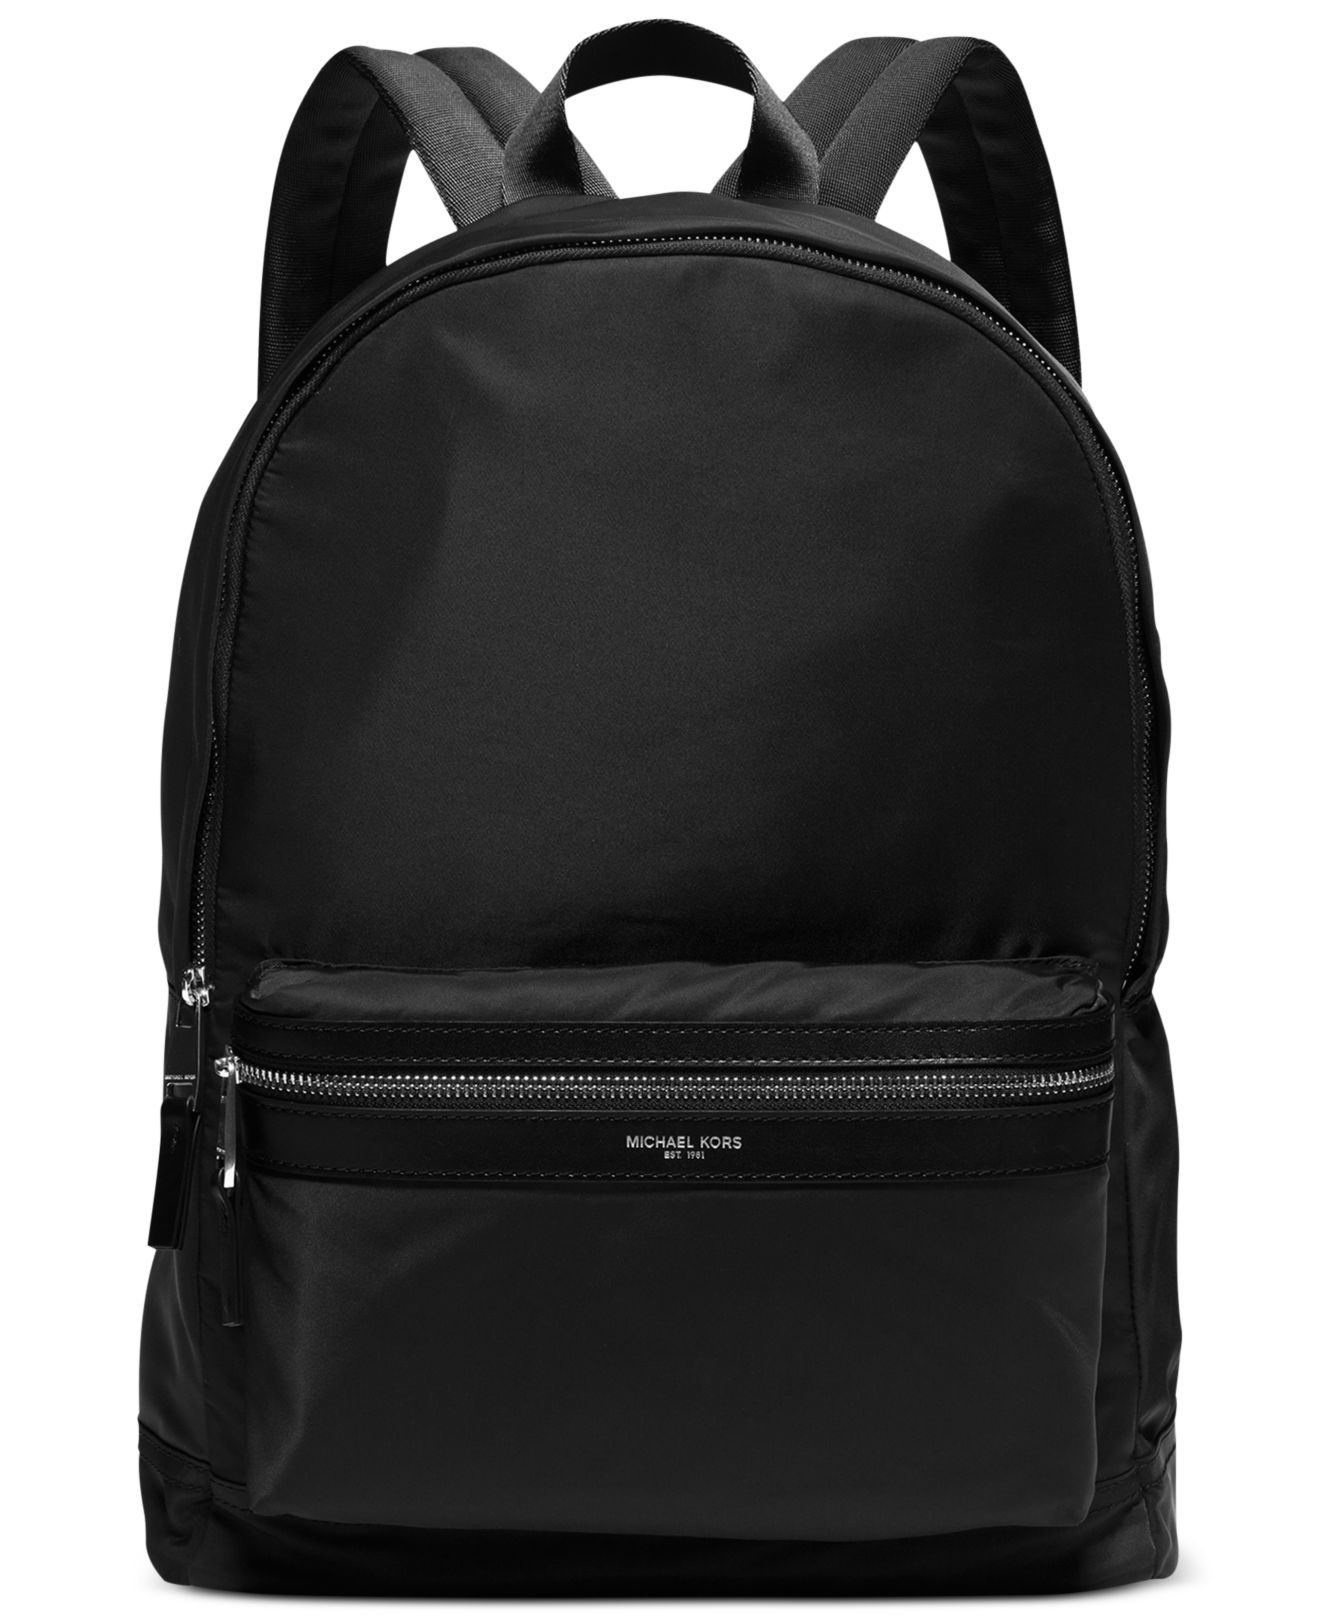 Lyst - Michael Kors Kent Lightweight Nylon Backpack in Black for Men